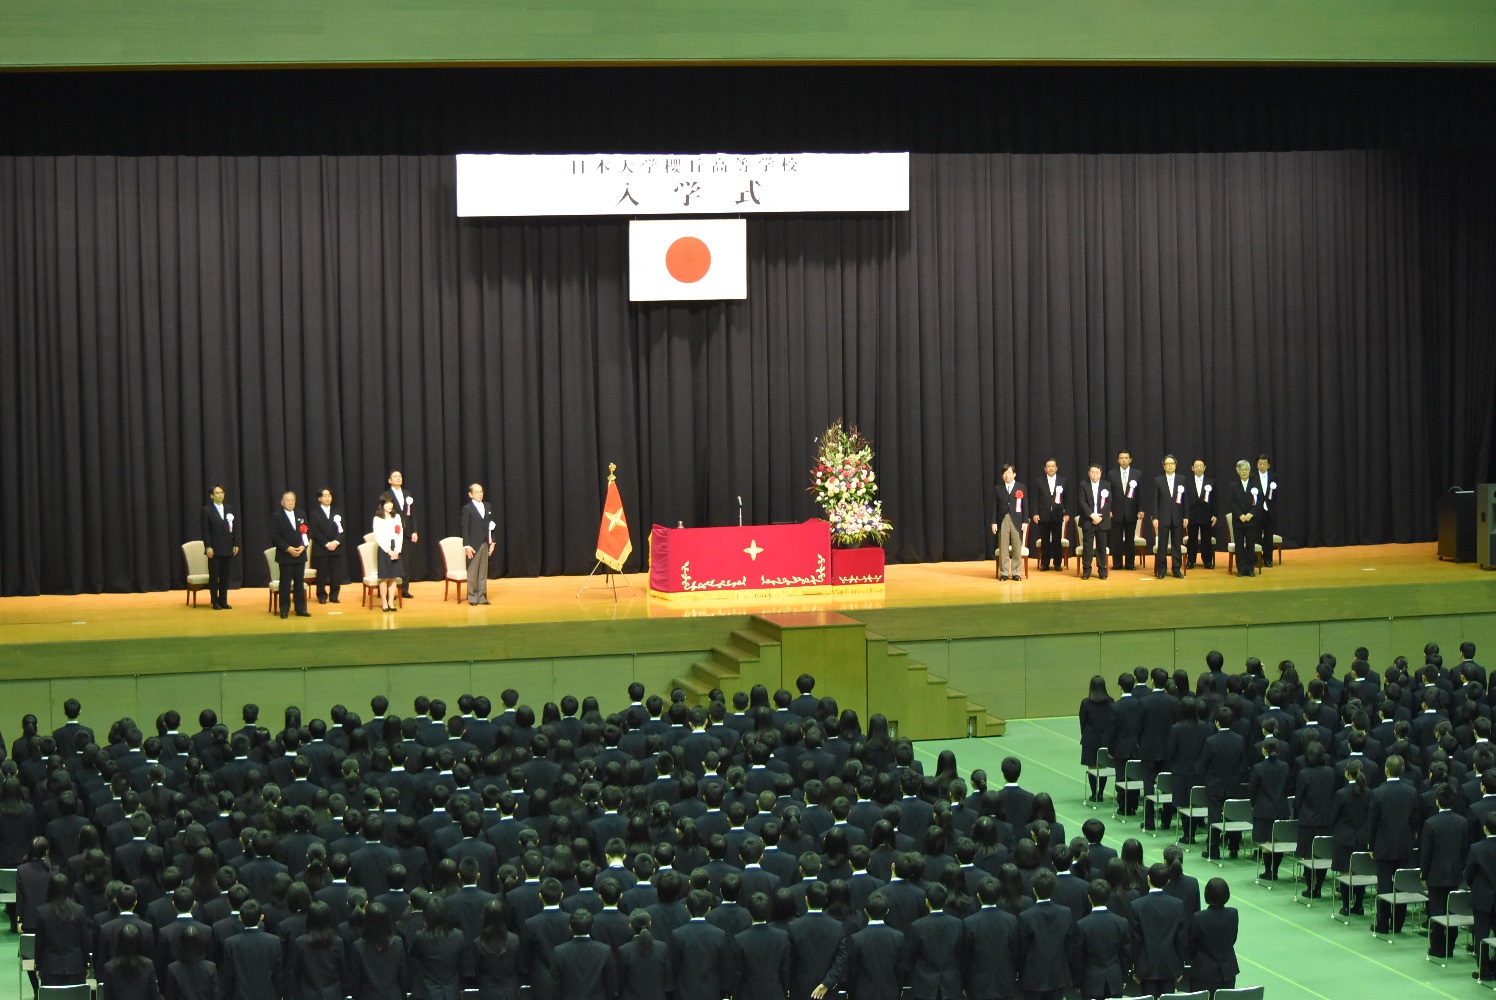 平成29年度日本大学櫻丘高等学校入学式を挙行いたしました | 日本大学 